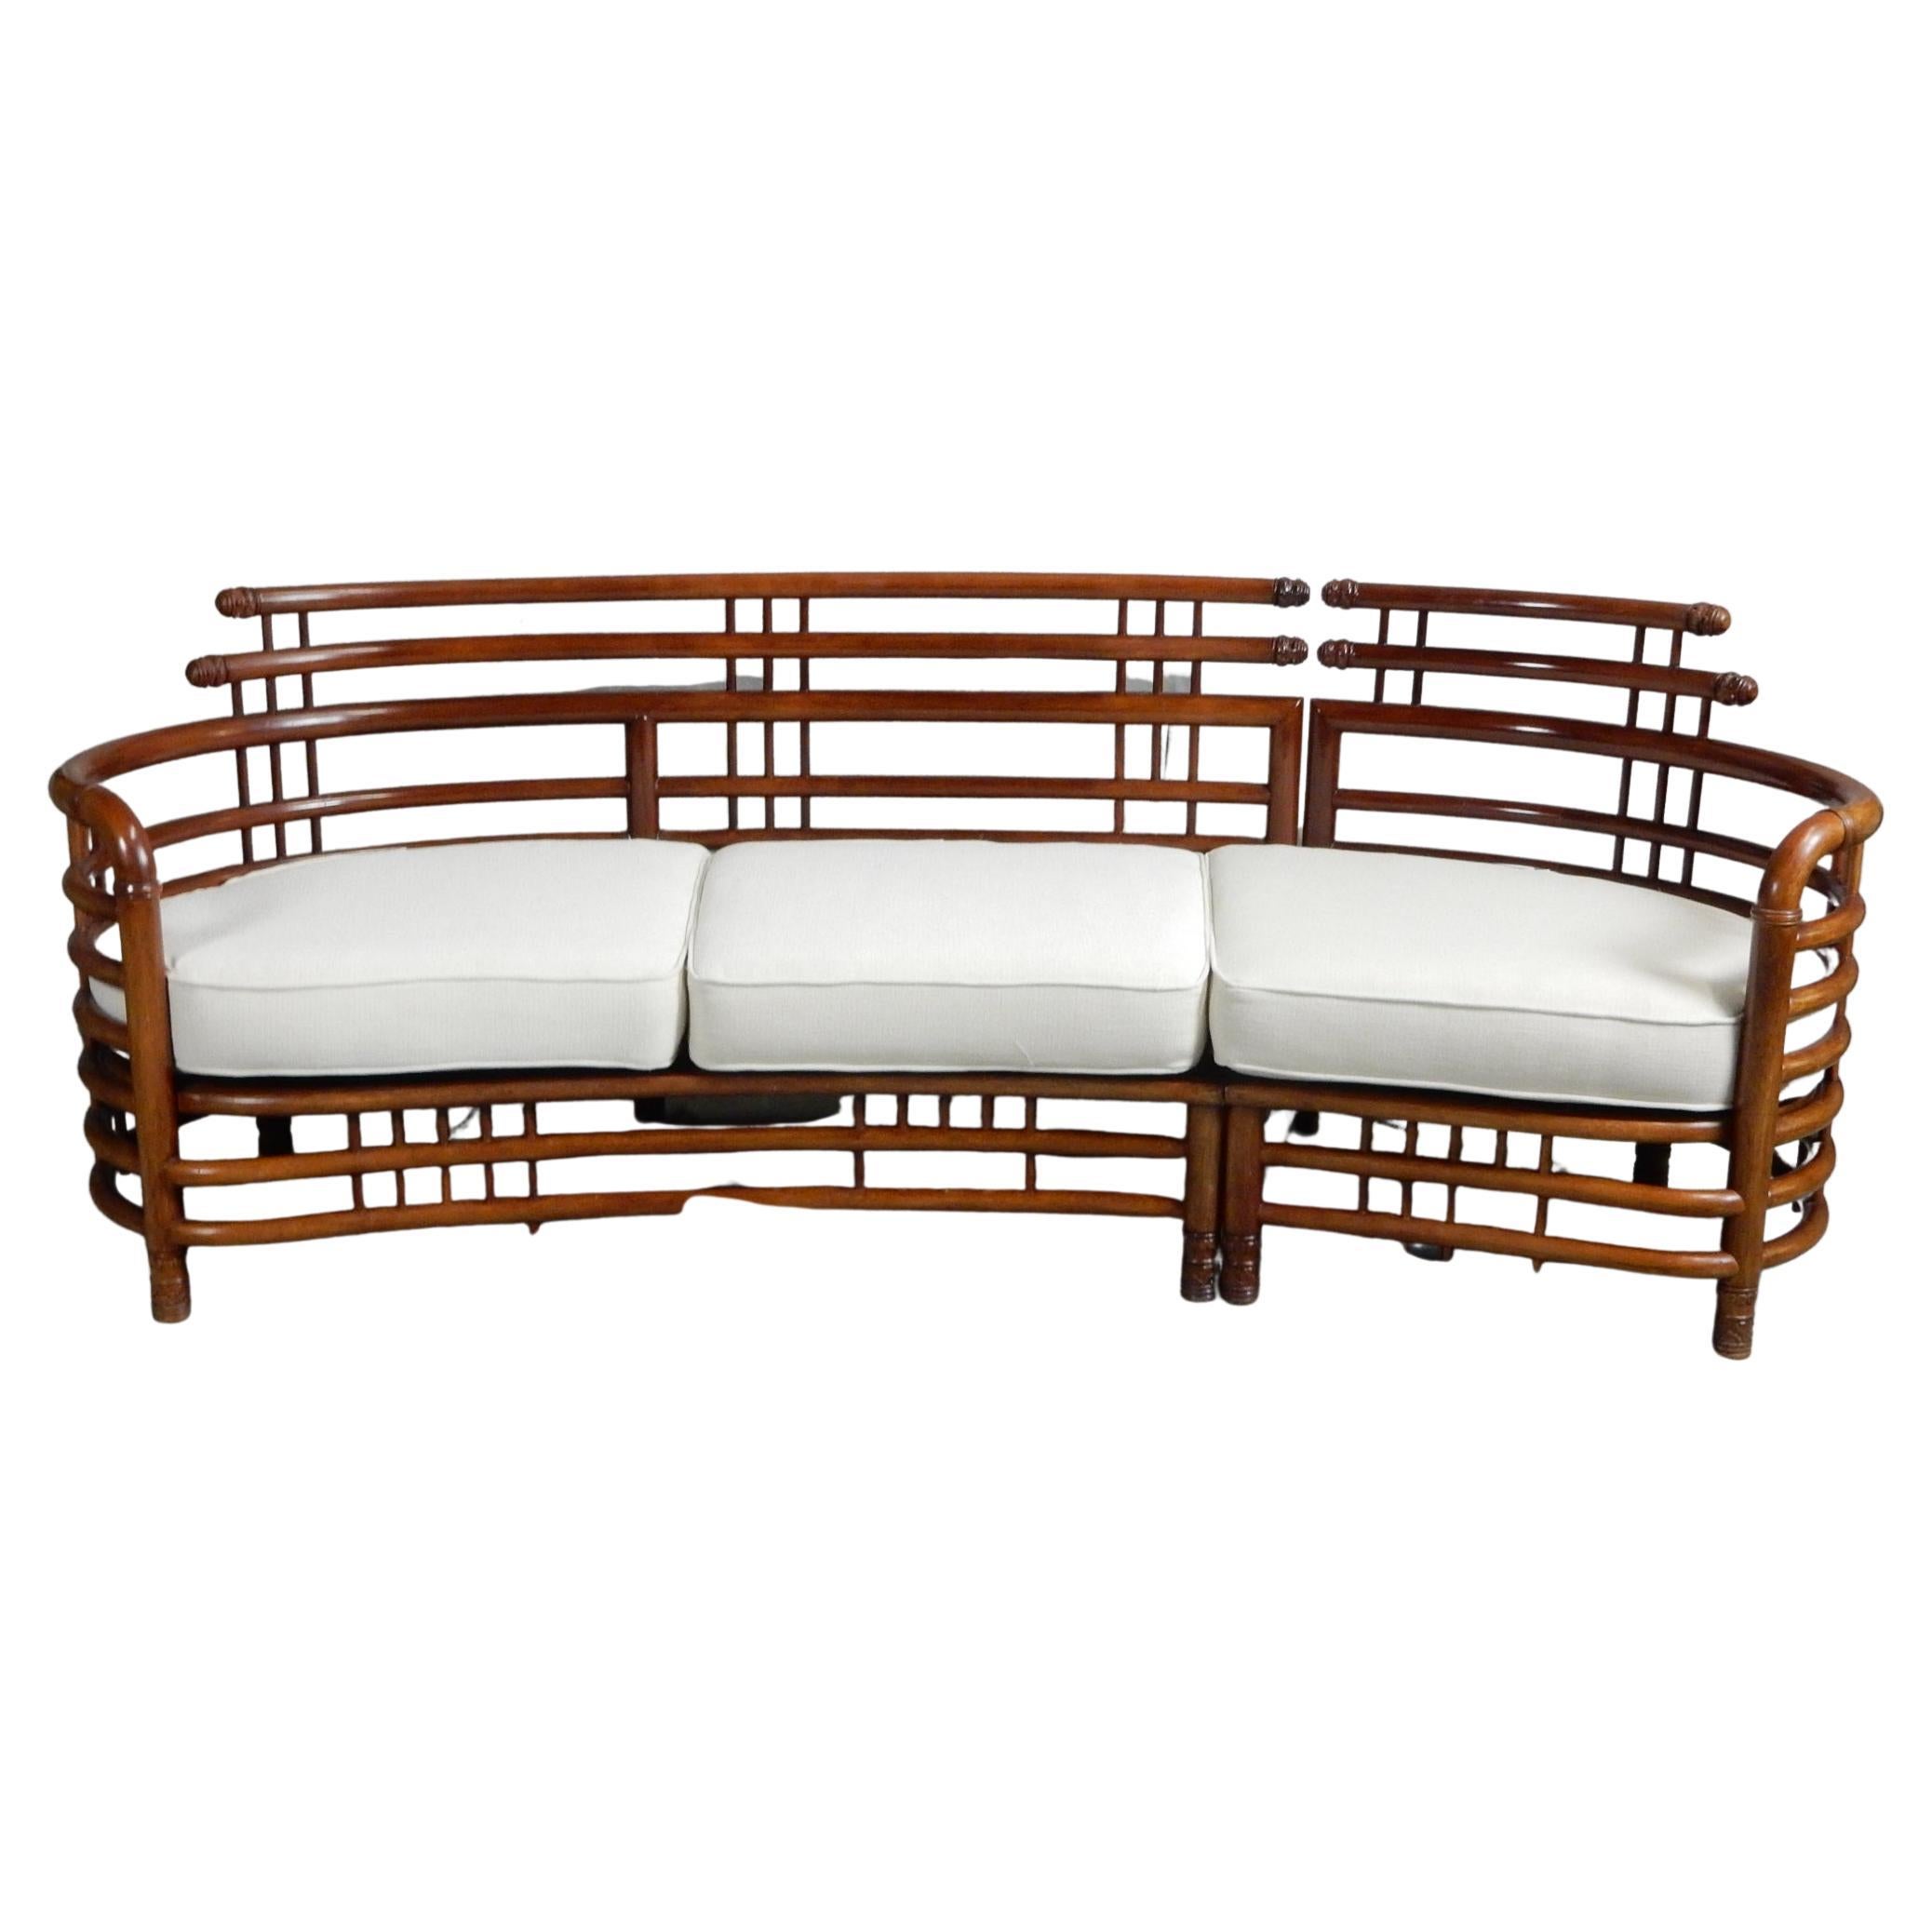 Canapé cage à oiseaux en bois de teck sculpté très esthétique.
Circa 1950's, Asie du Sud. Un meuble lourd et bien conçu.
Coussins nouvellement rembourrés. Pas de dommages ni de réparations.
Les boulons sont assemblés sous le côté gauche, ce qui